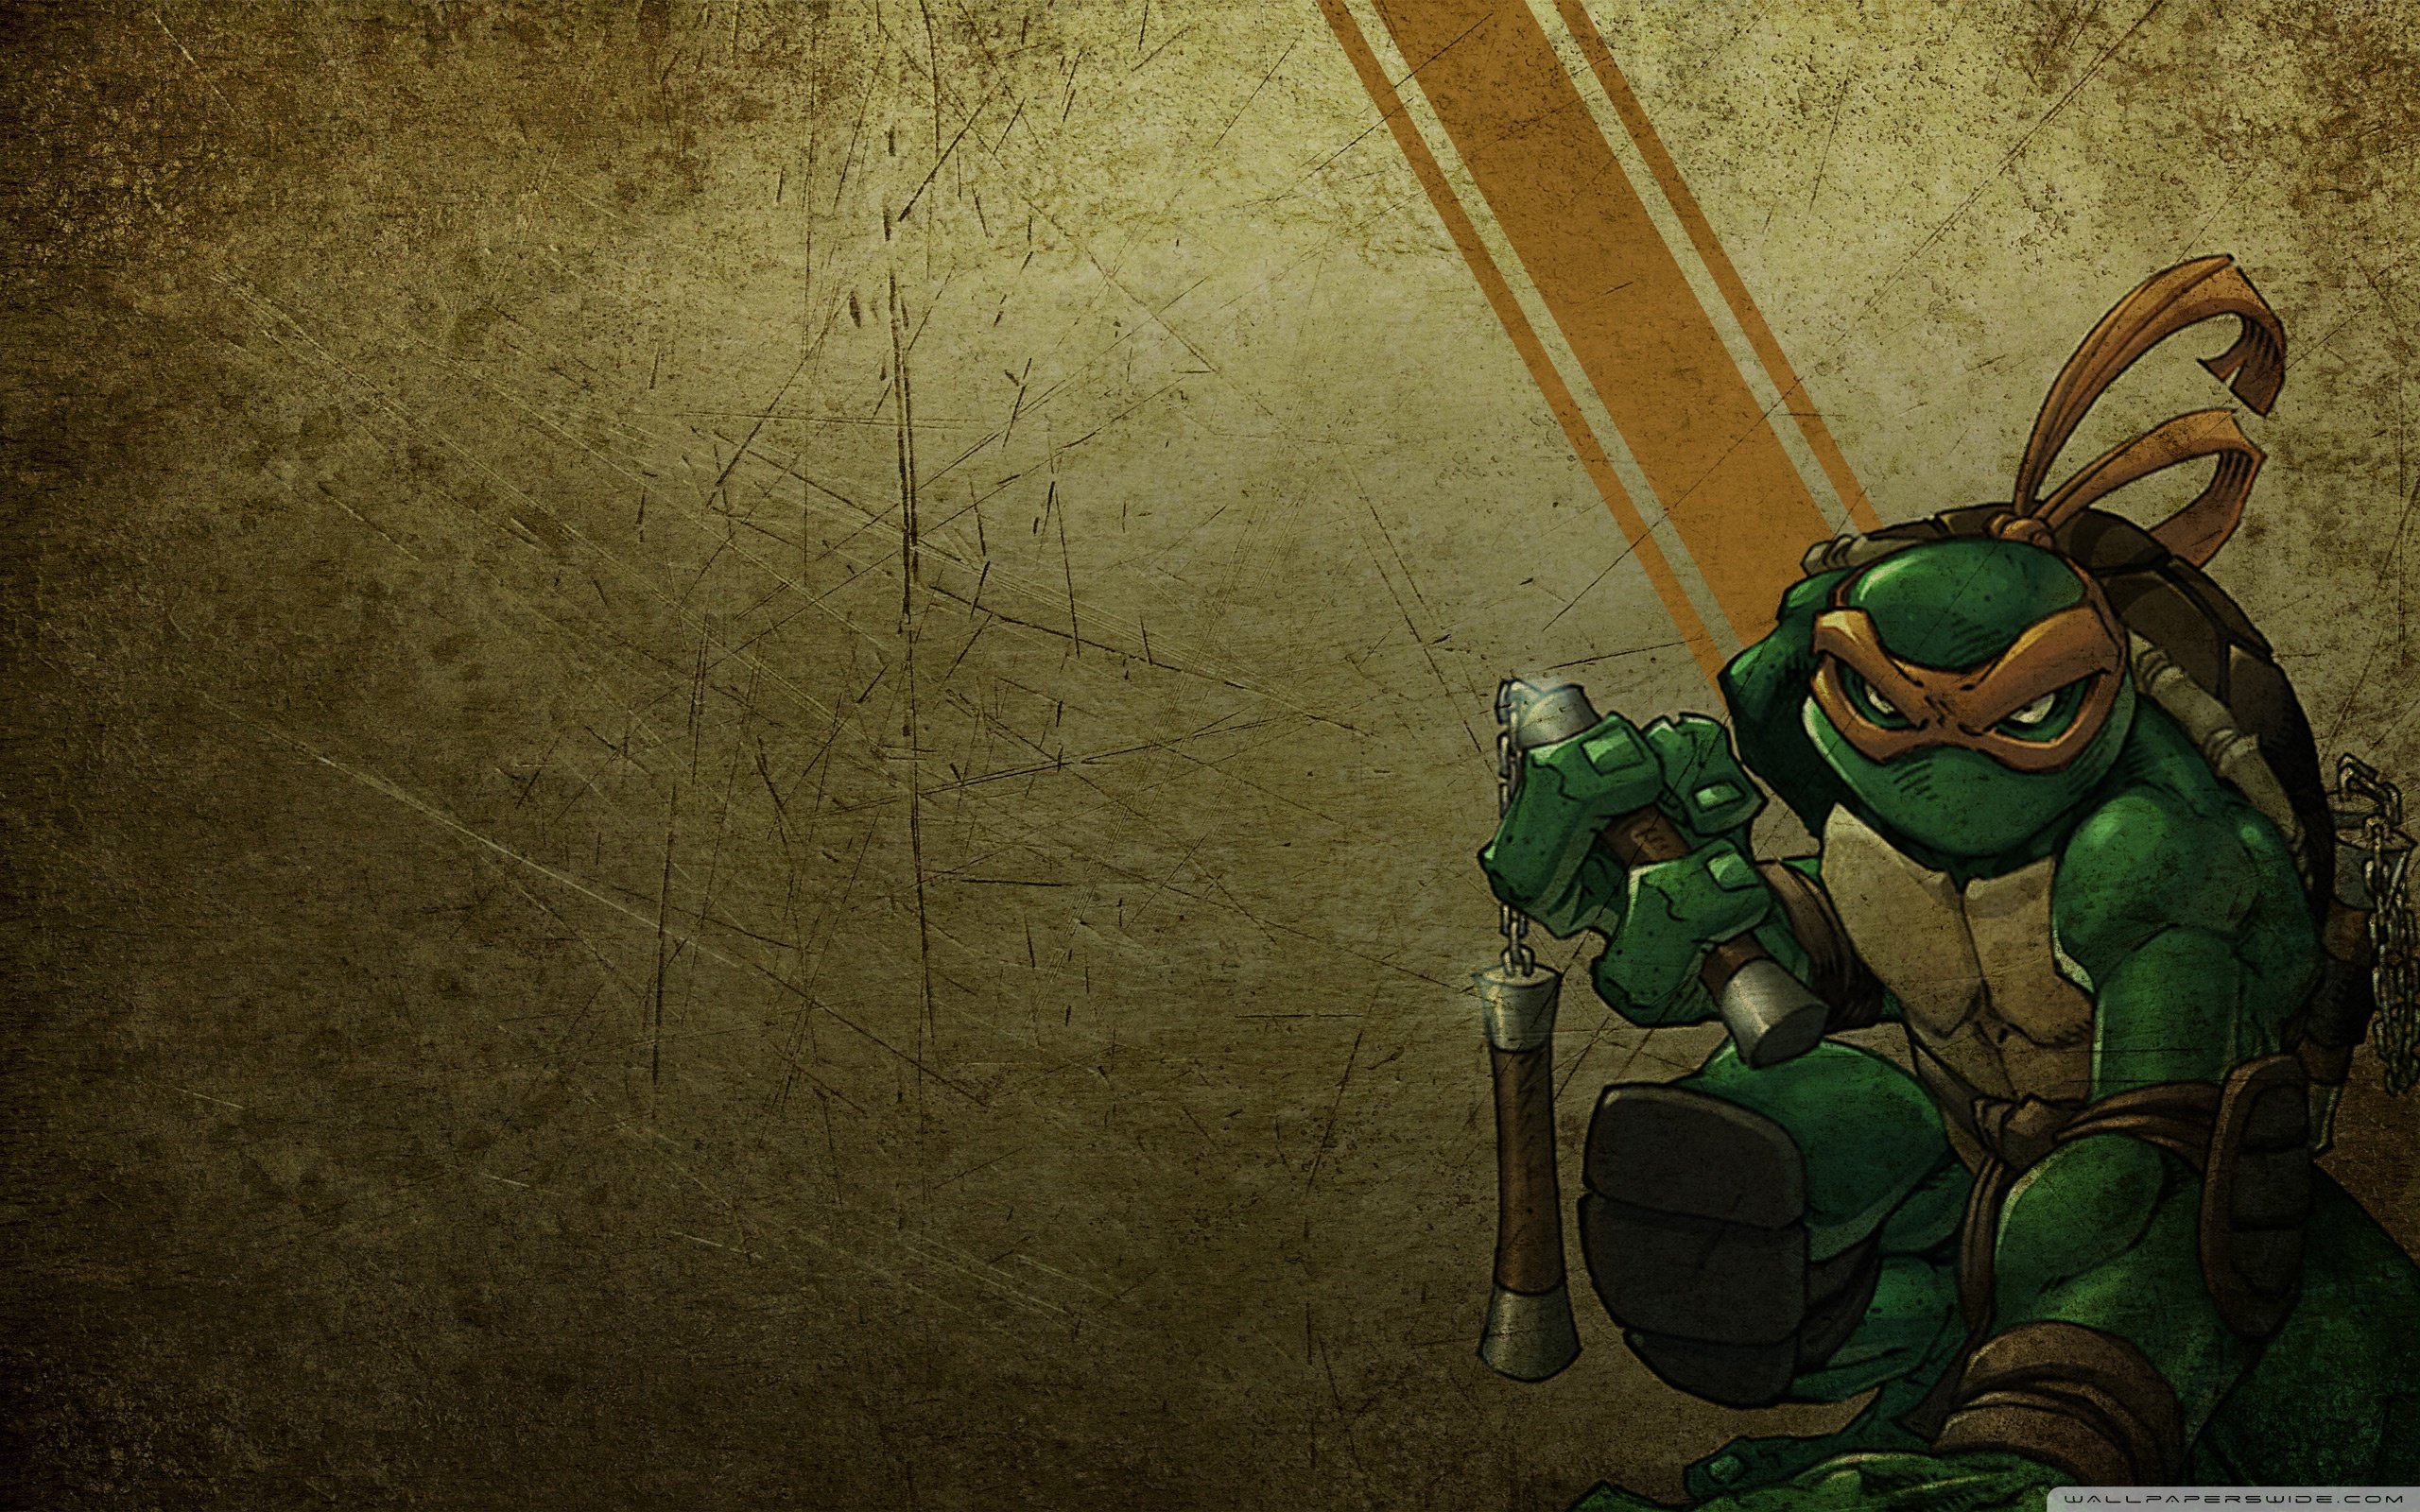 michelangelo, Teenage, Mutant, Ninja, Turtles wallpaper 2560x1600 Wallpaper